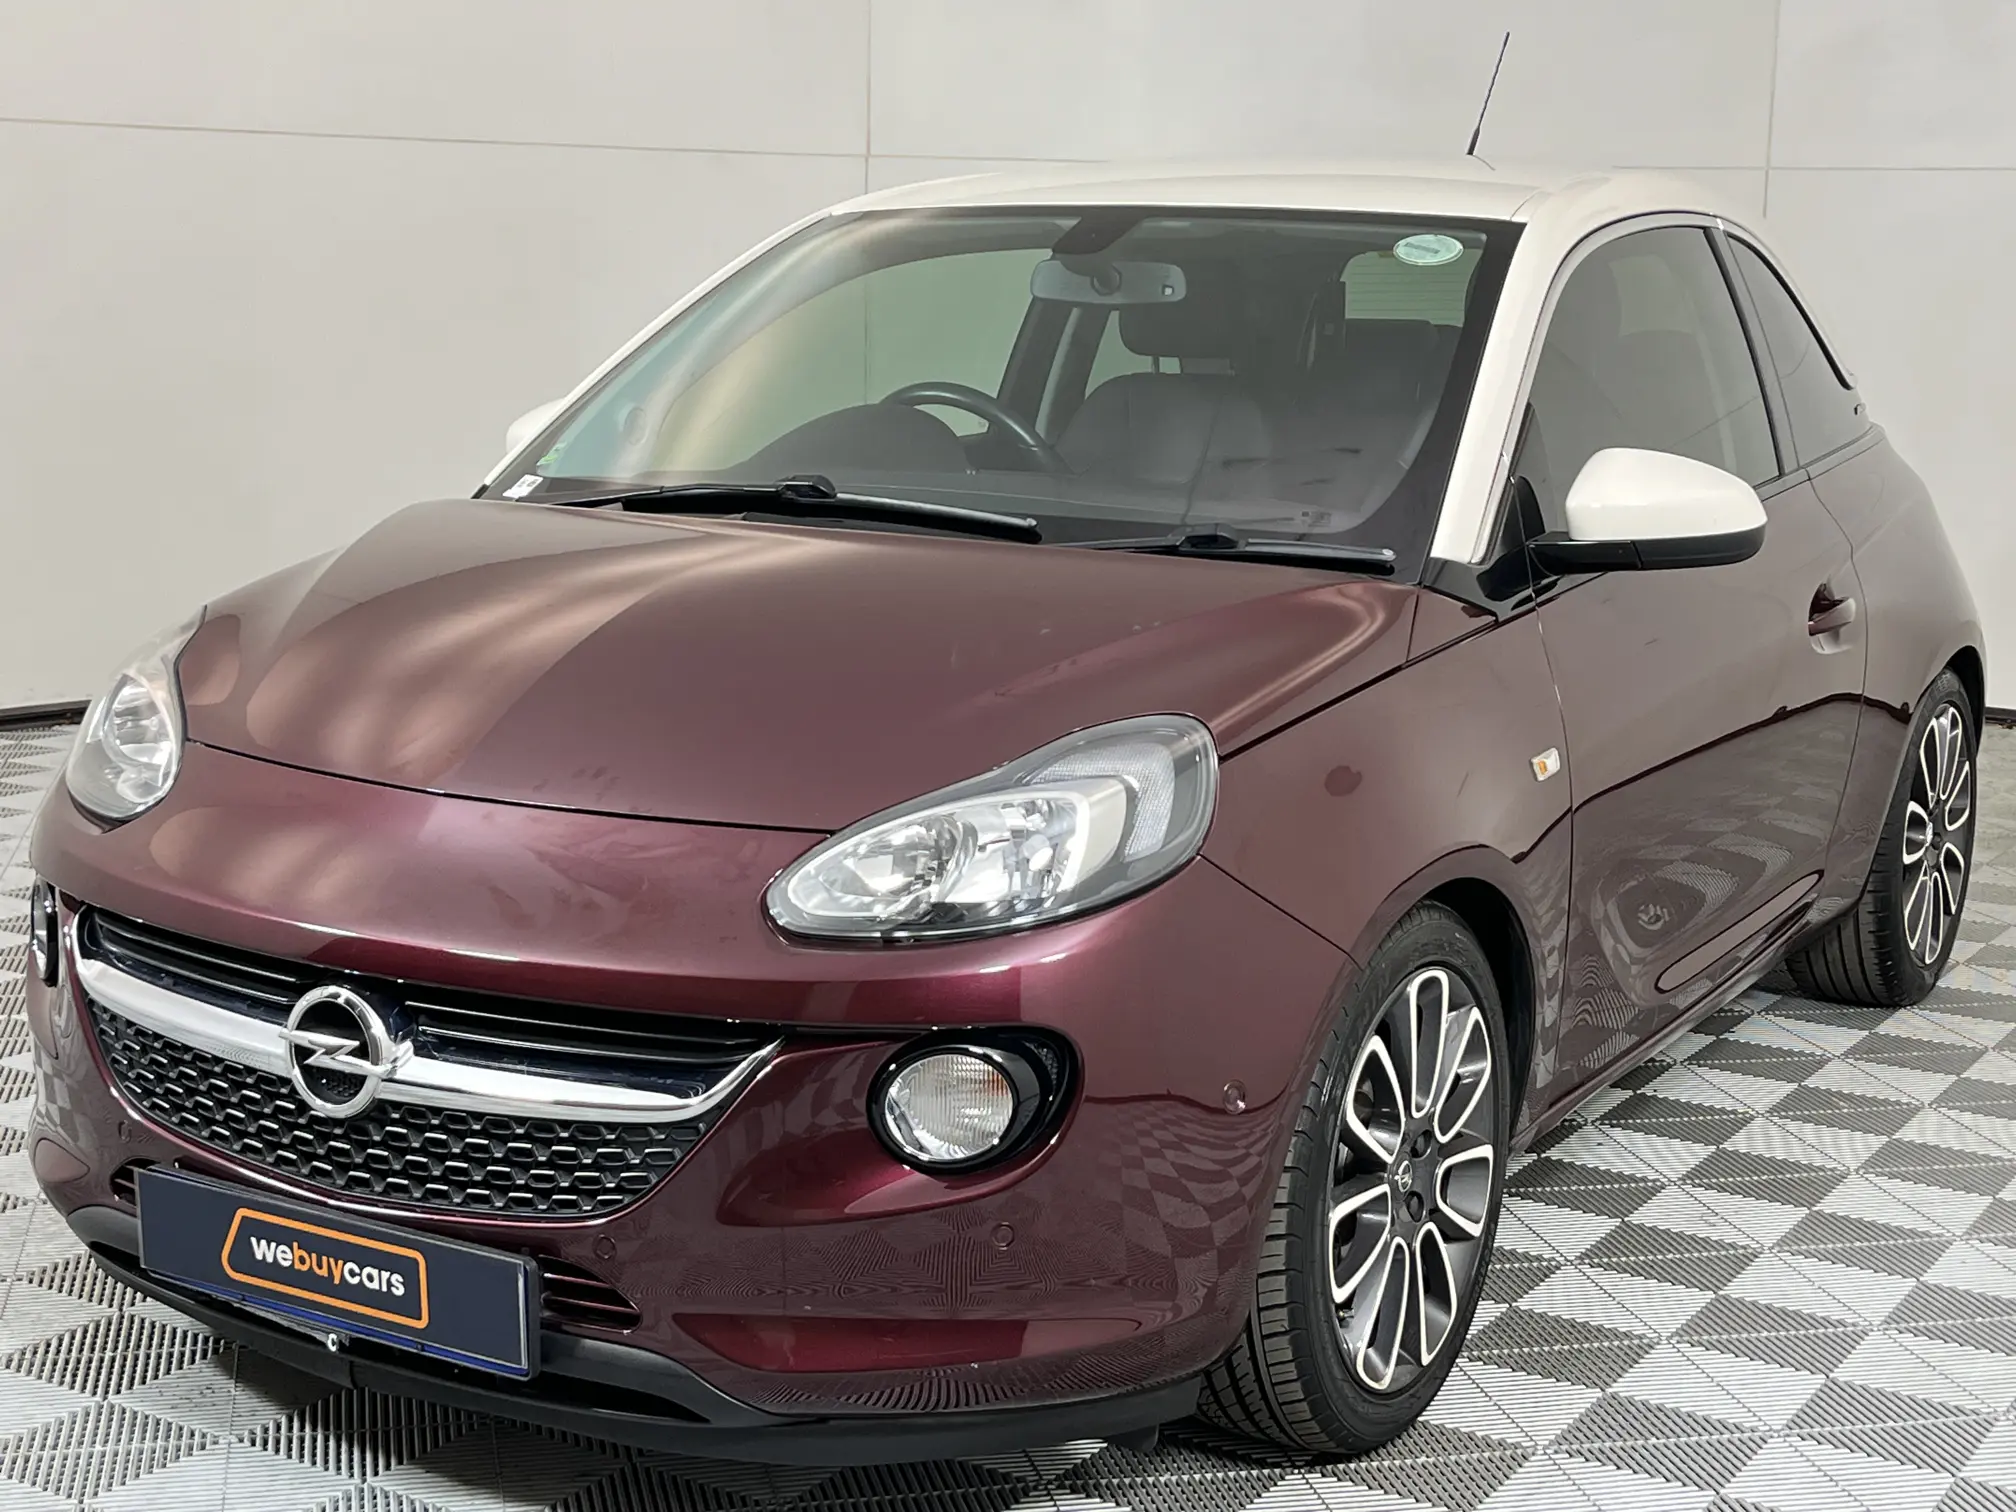 2015 Opel Adam 1.0T Glam/slam (3dr)